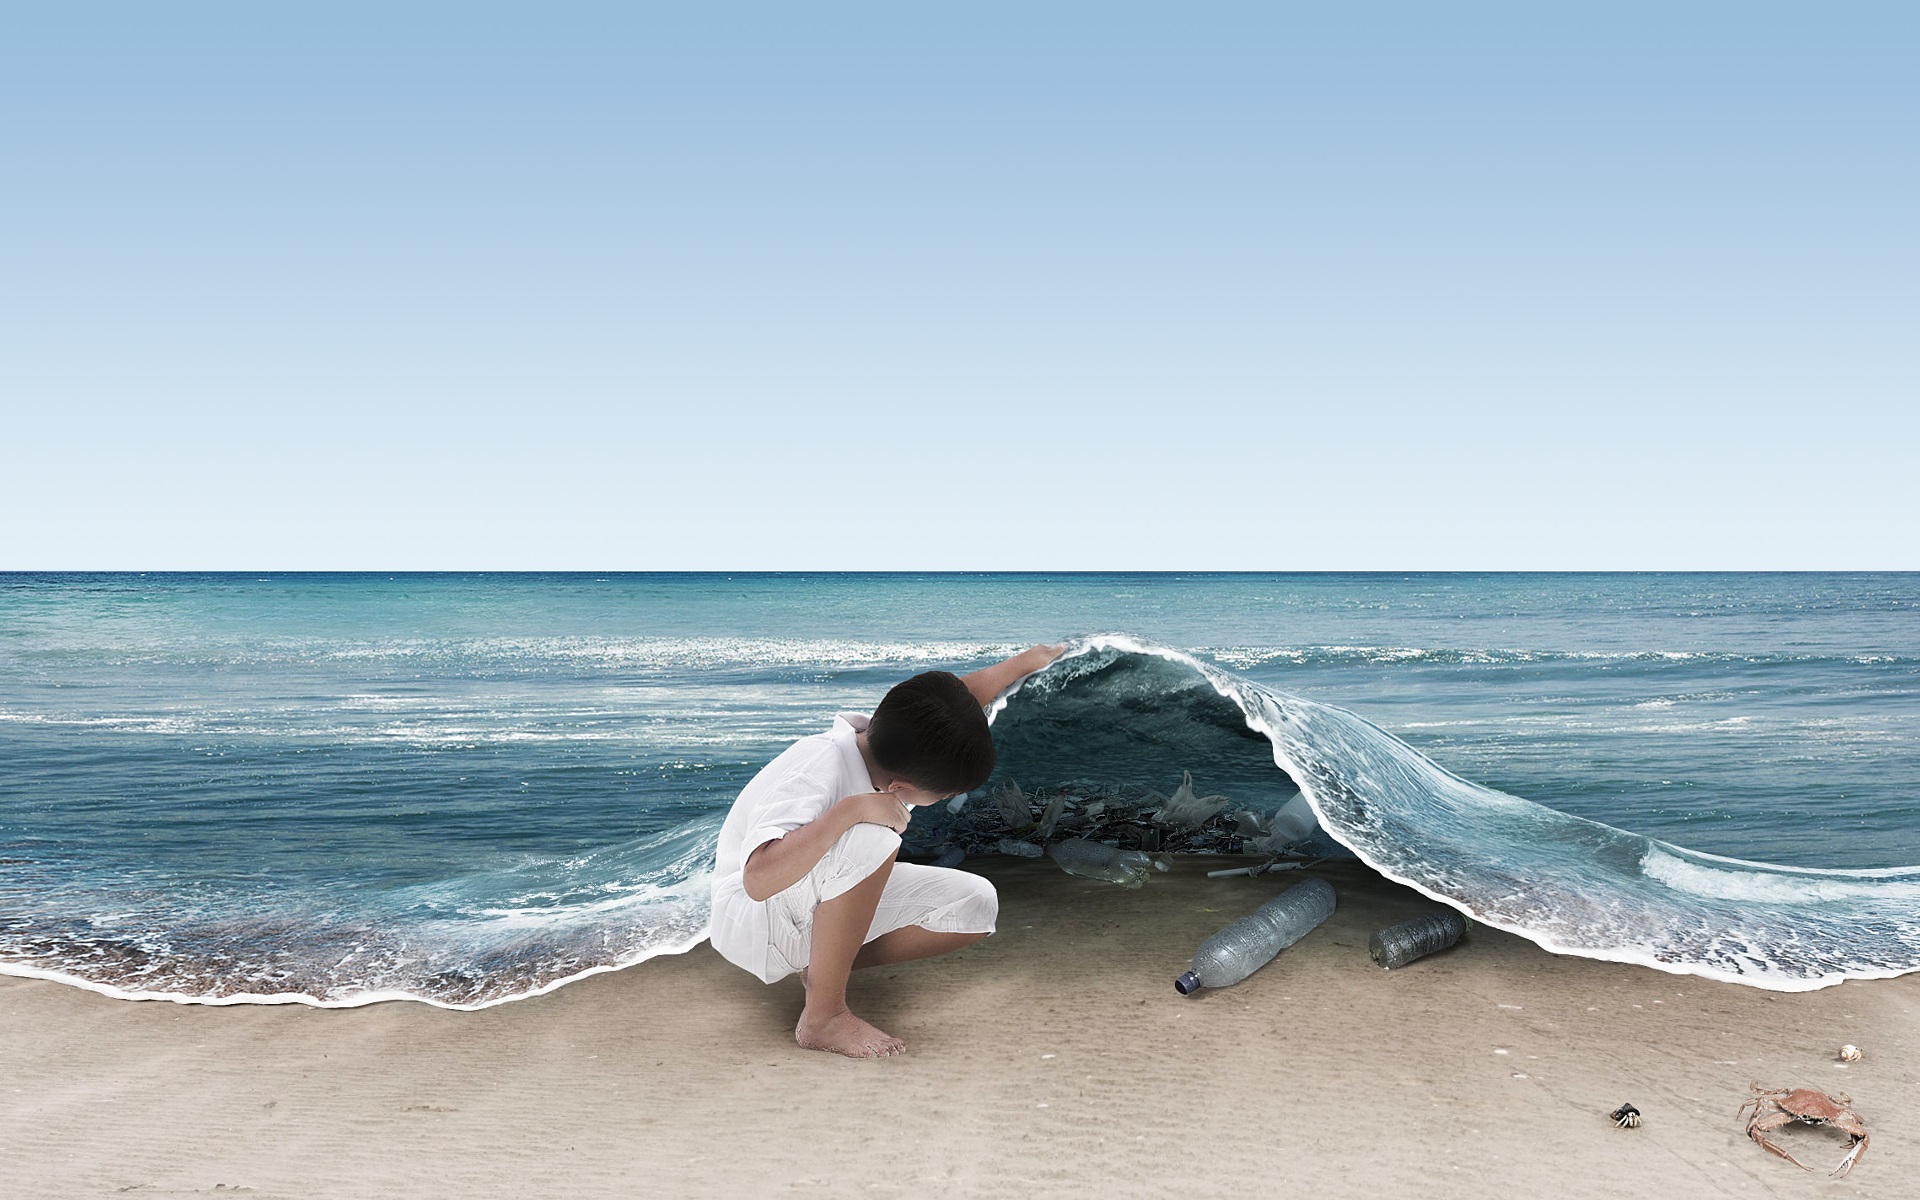 دانلود عکس با مفهوم و مهم به معنای کثیفی دریا ها 